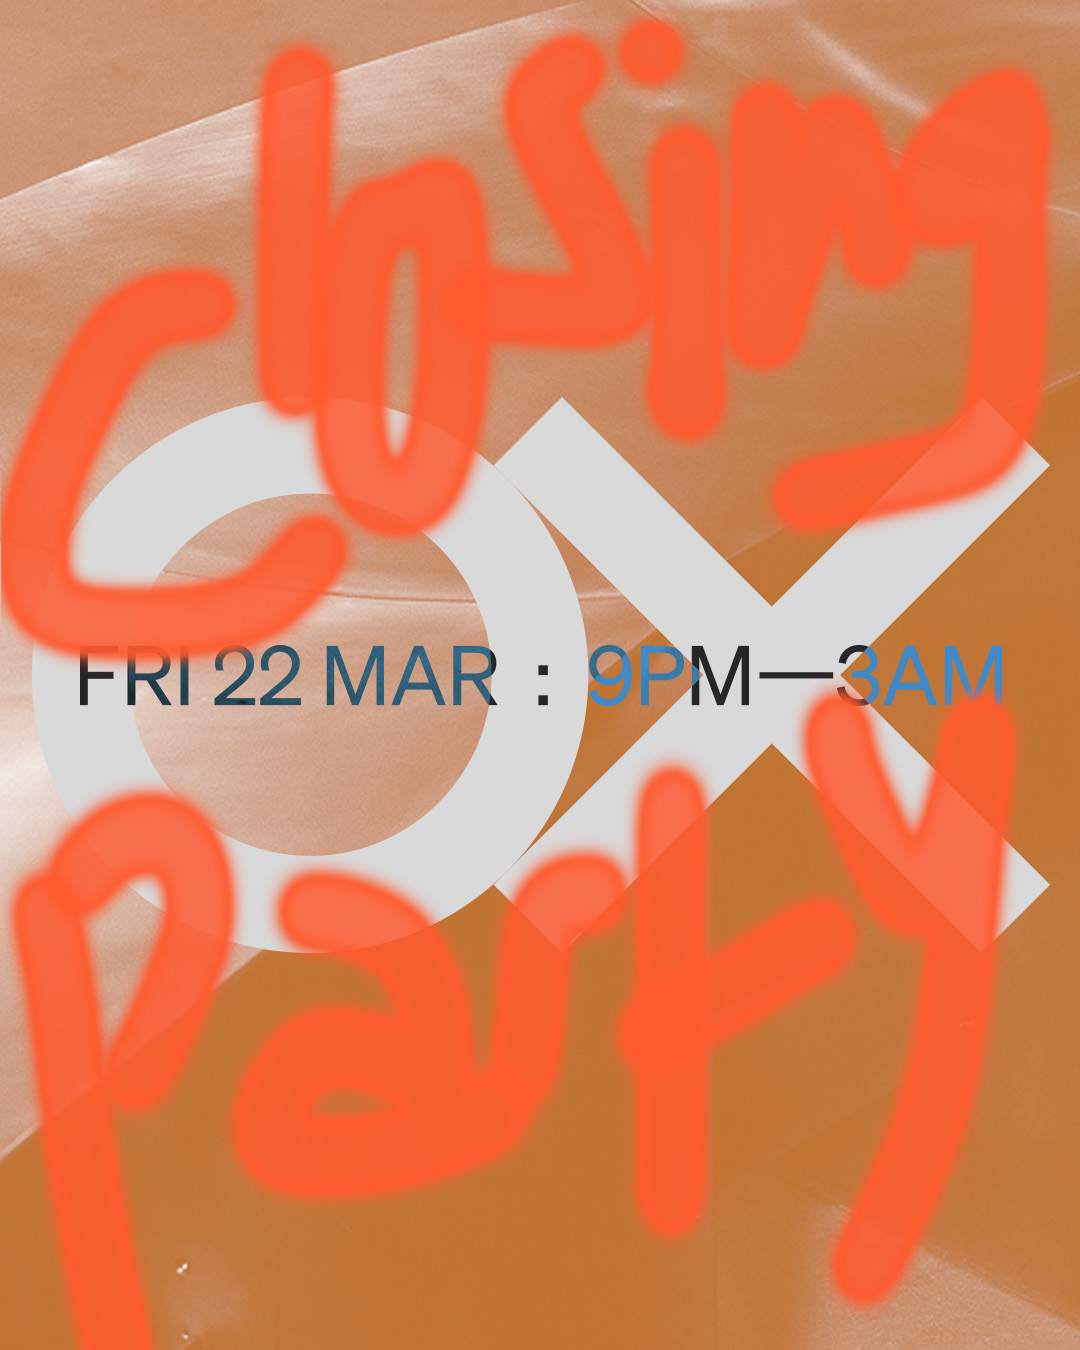 OX: Closing Party - Página frontal